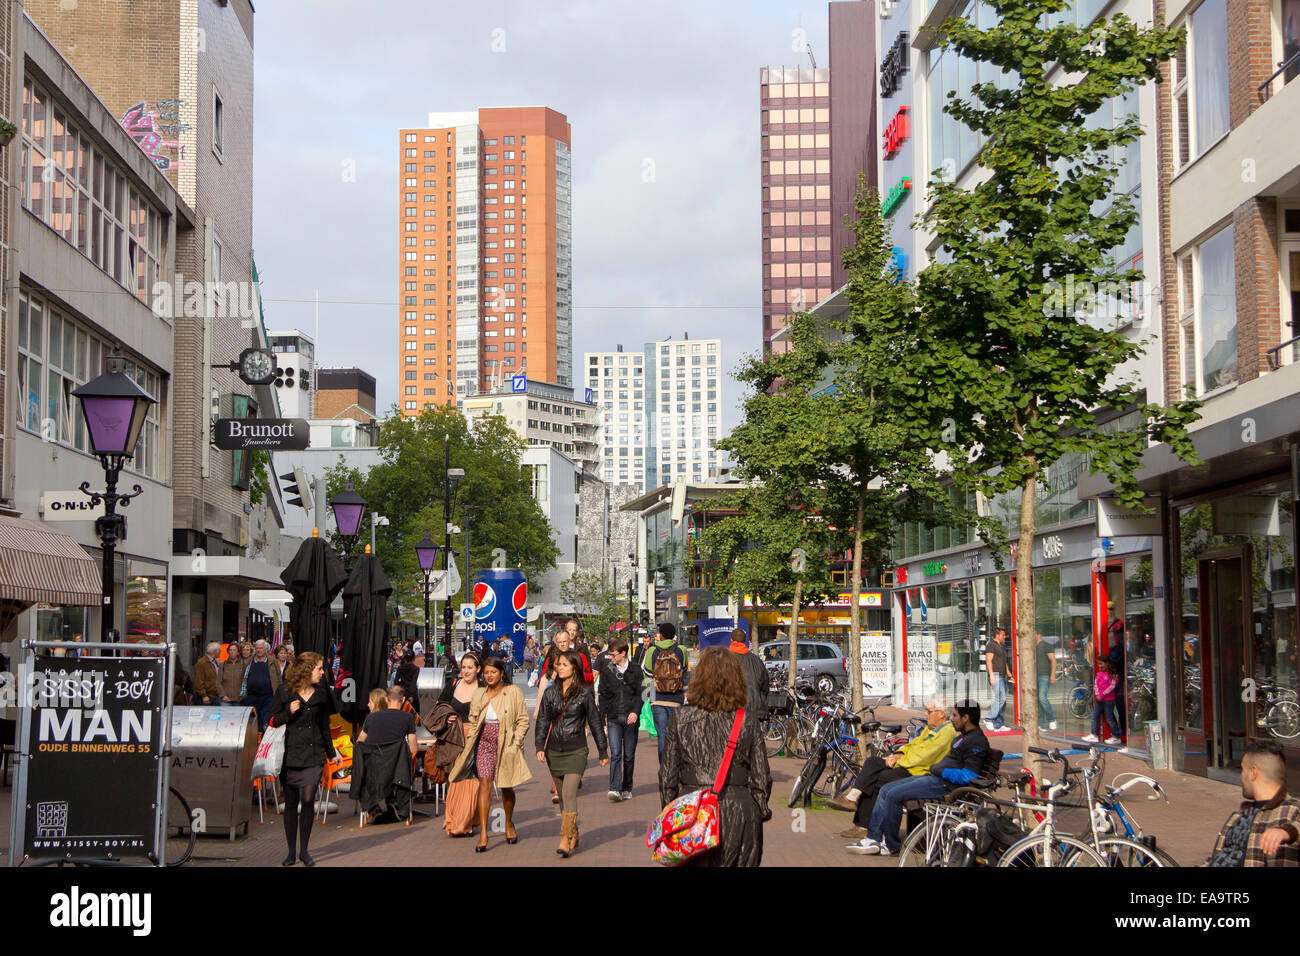 La trafficata strada dello shopping di Oude Binnenweg, Rotterdam, Paesi Bassi. Foto Stock